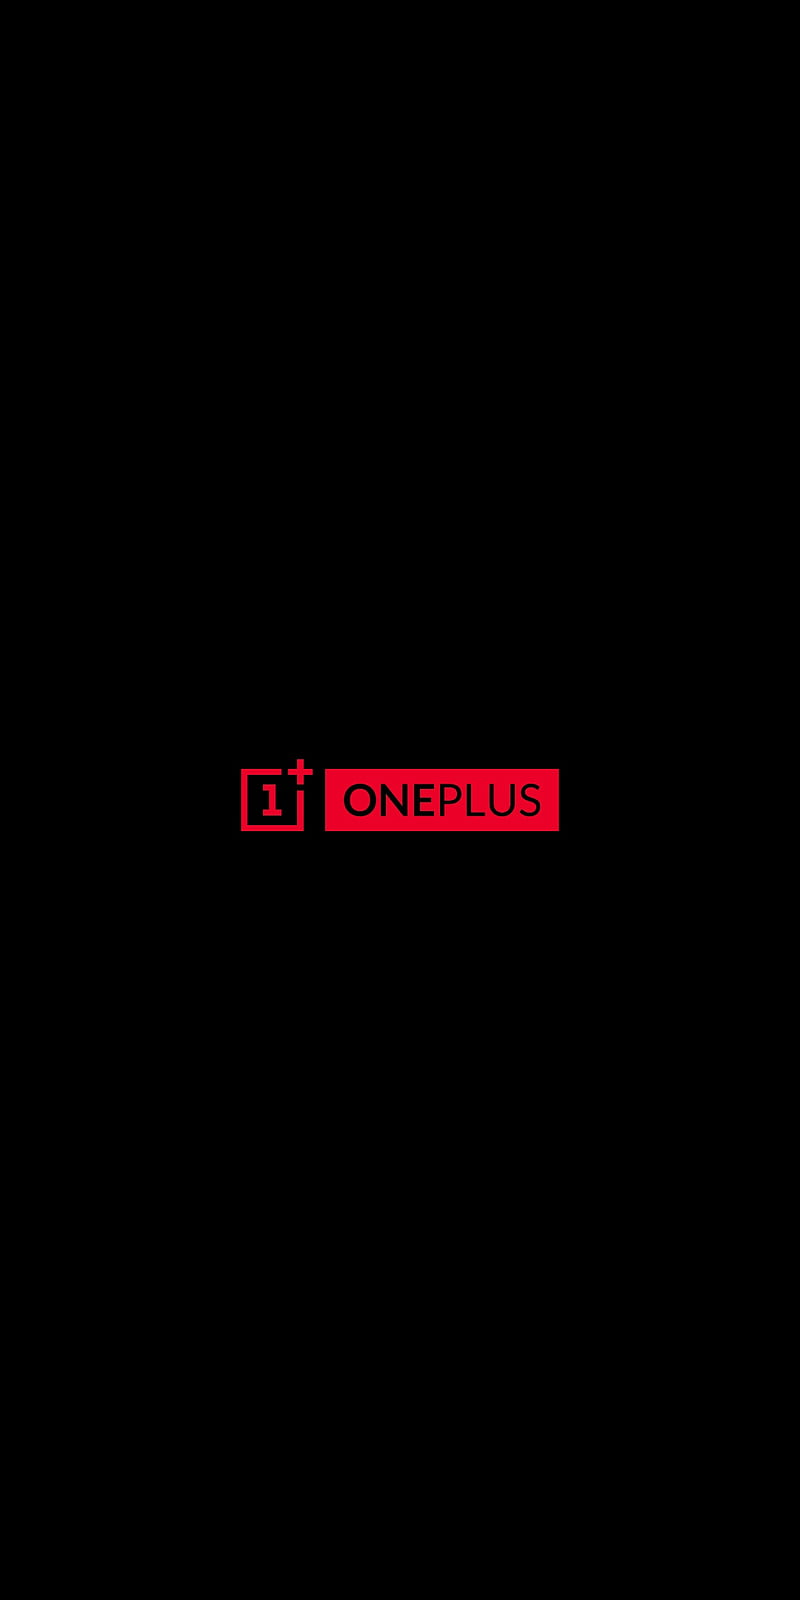 OnePlus 5 Wallpapers  Hampus Olsson  Portfolio of 2021